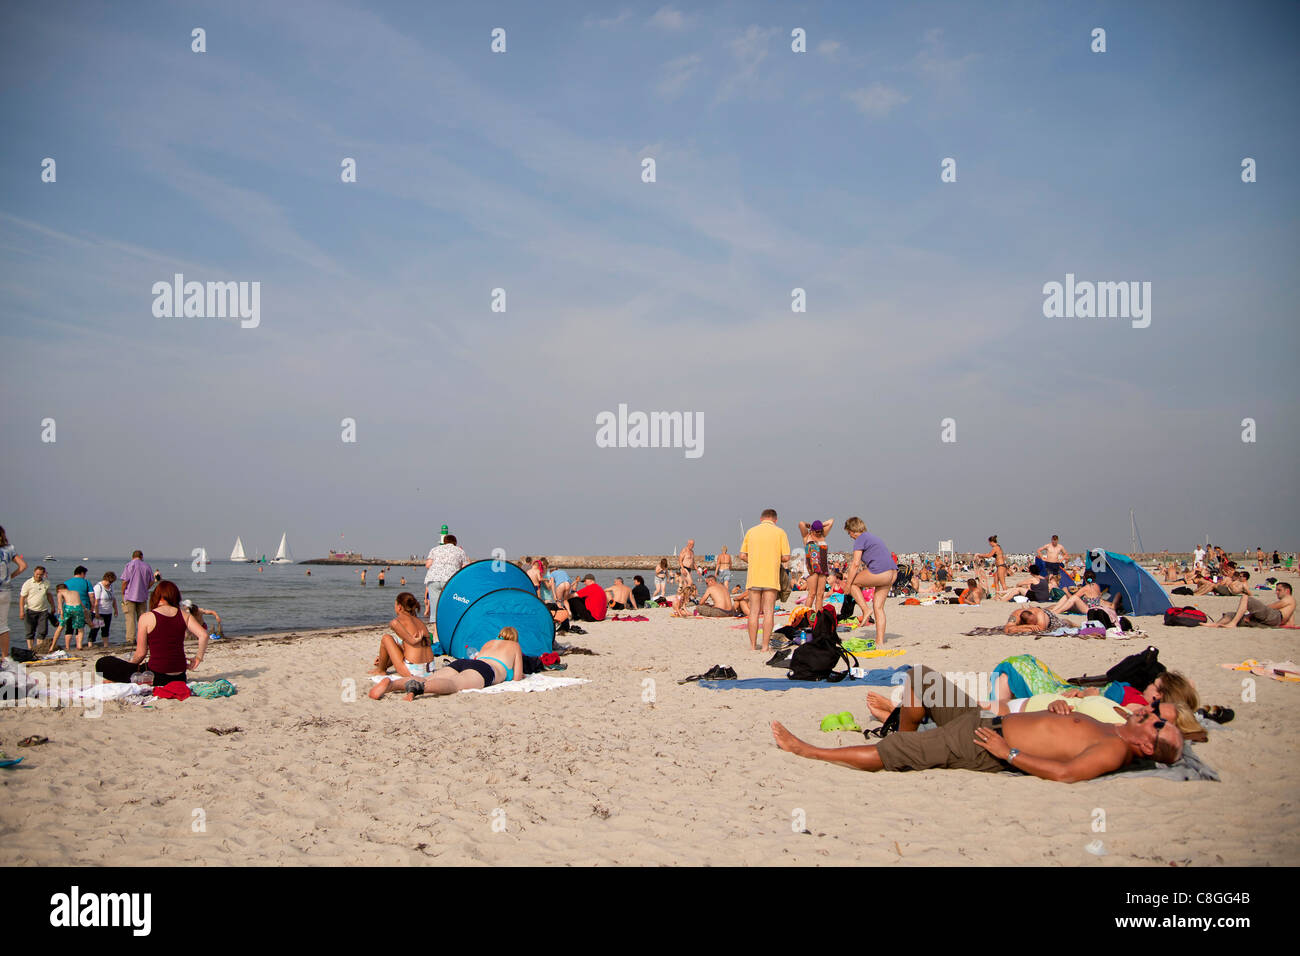 La plage animée de Rostock sur la mer Baltique, Rostock, Mecklembourg-Poméranie-Occidentale, Allemagne, Europe Banque D'Images